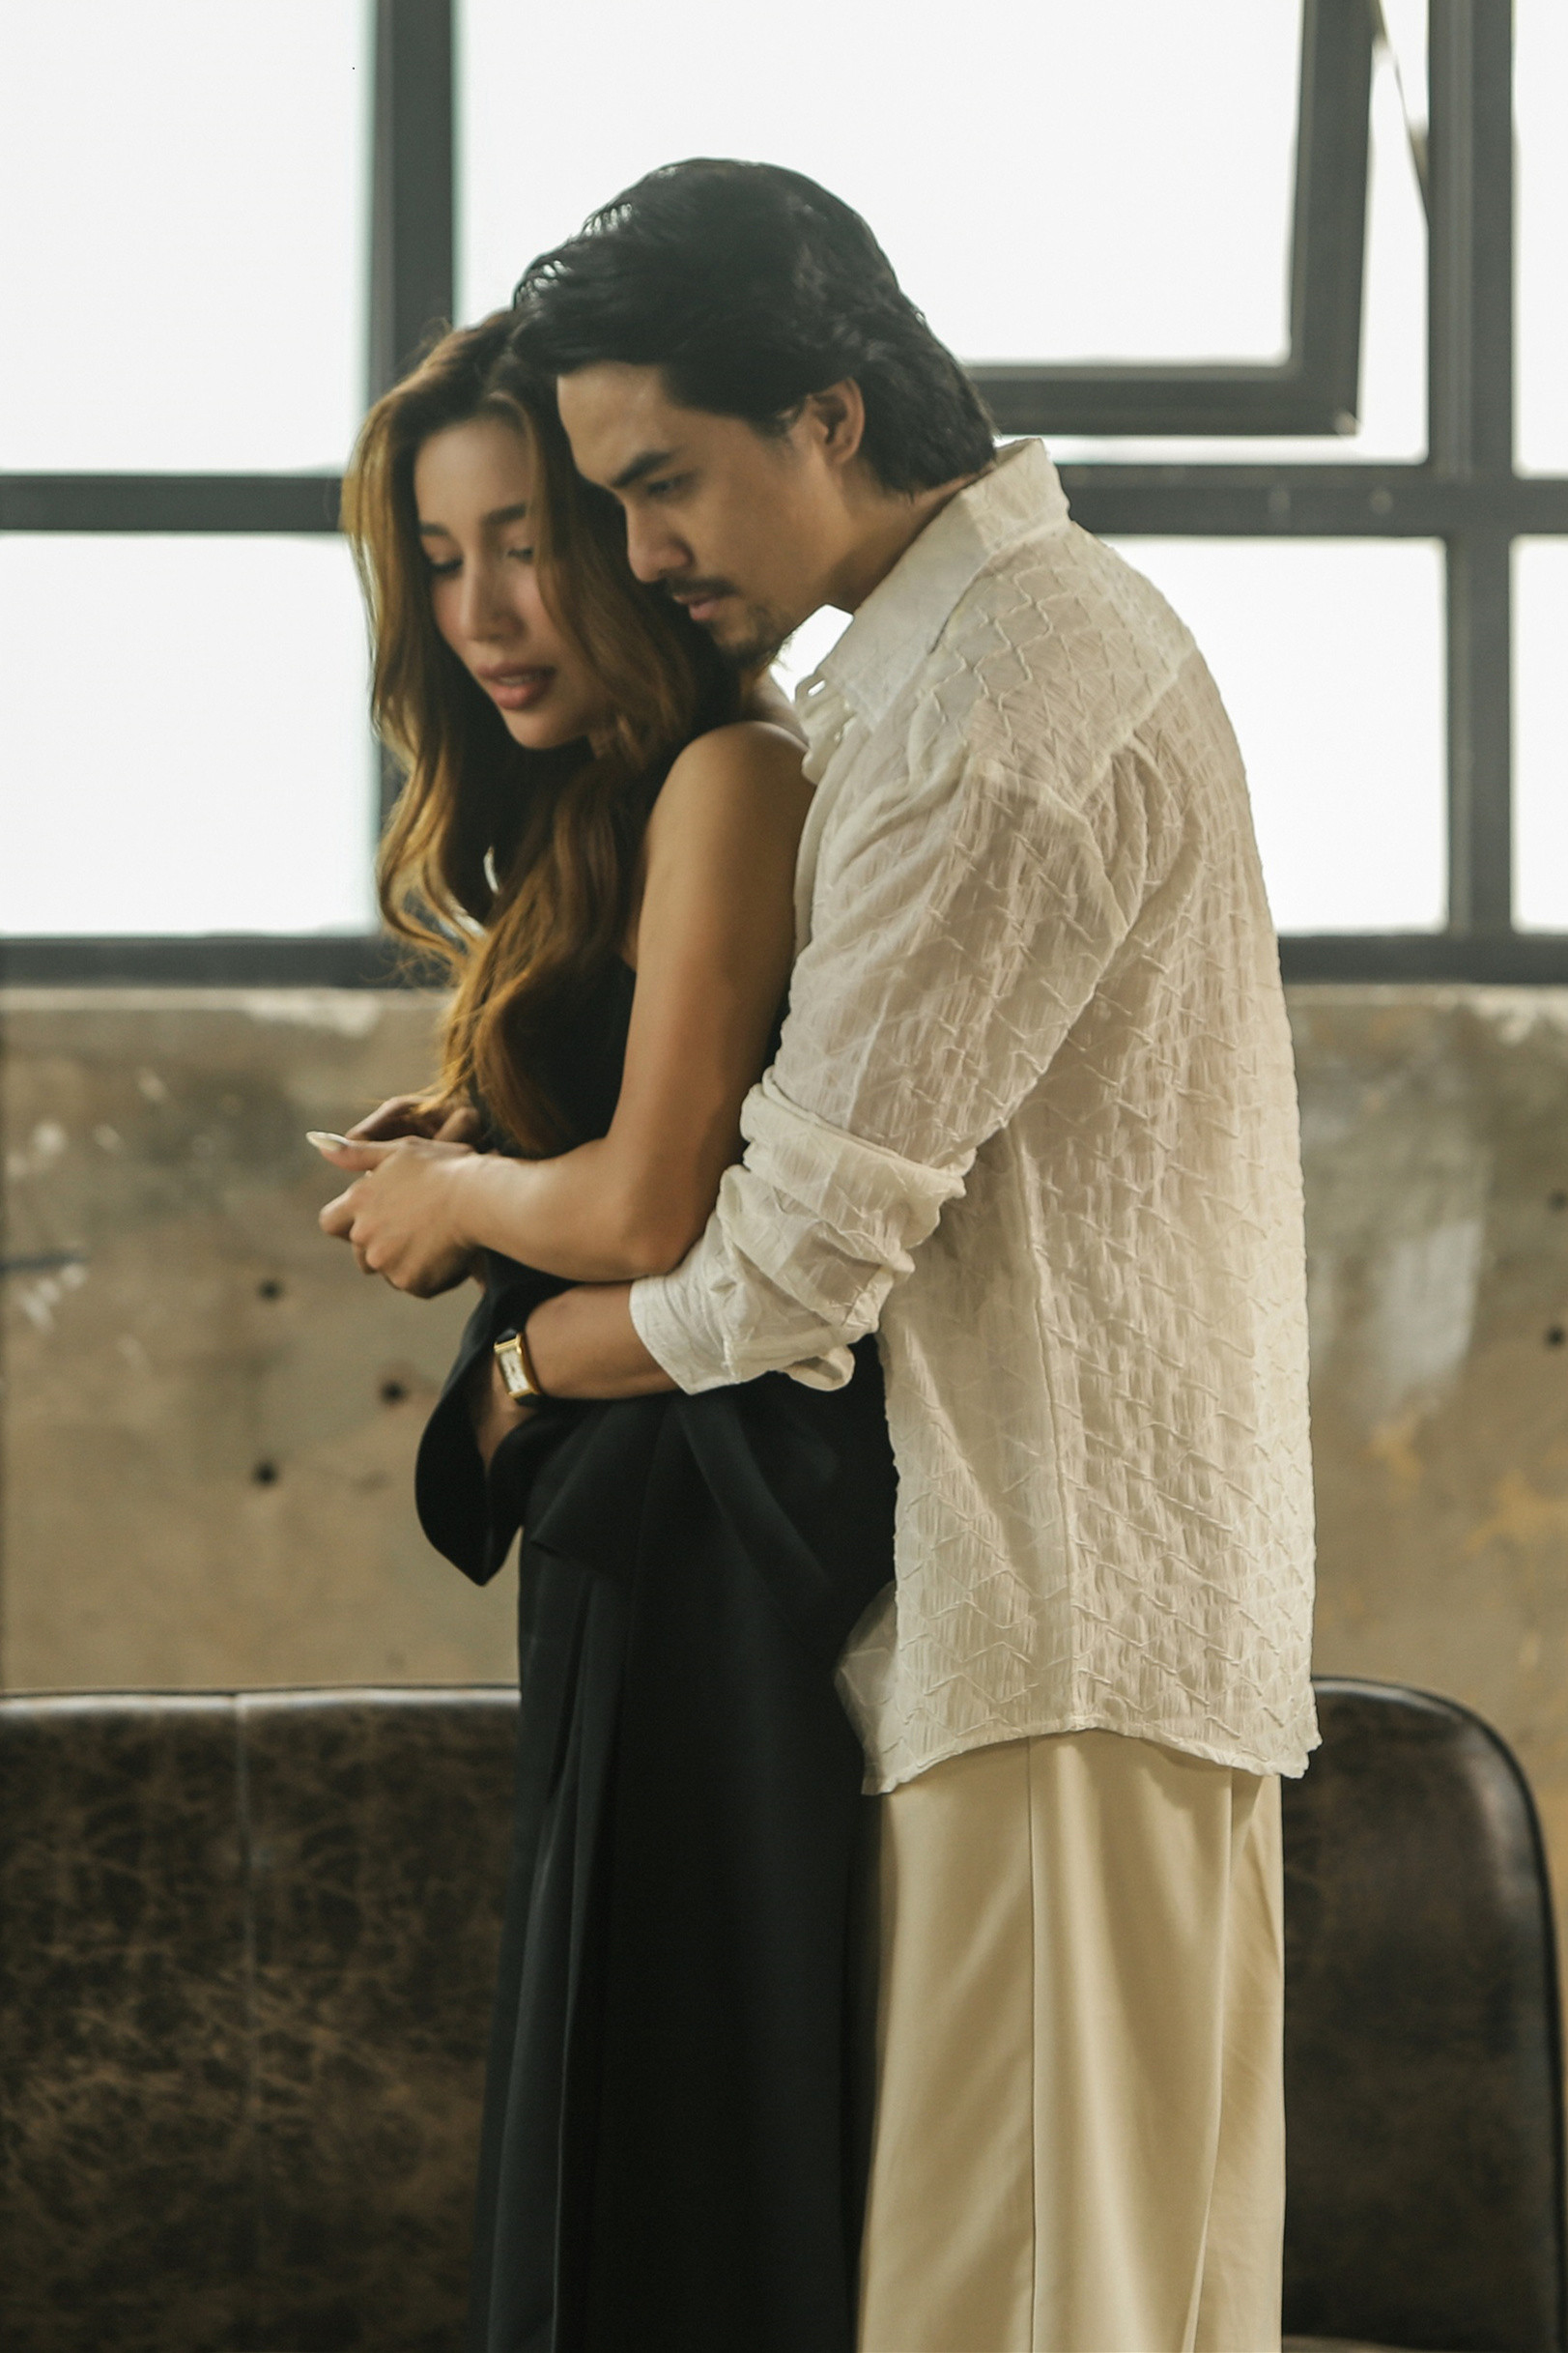 “Hiện tượng băng đĩa” Phương Phương Thảo hợp tác cùng tình cũ của Phương Thanh, ra mắt cùng lúc 4 MV - ảnh 3